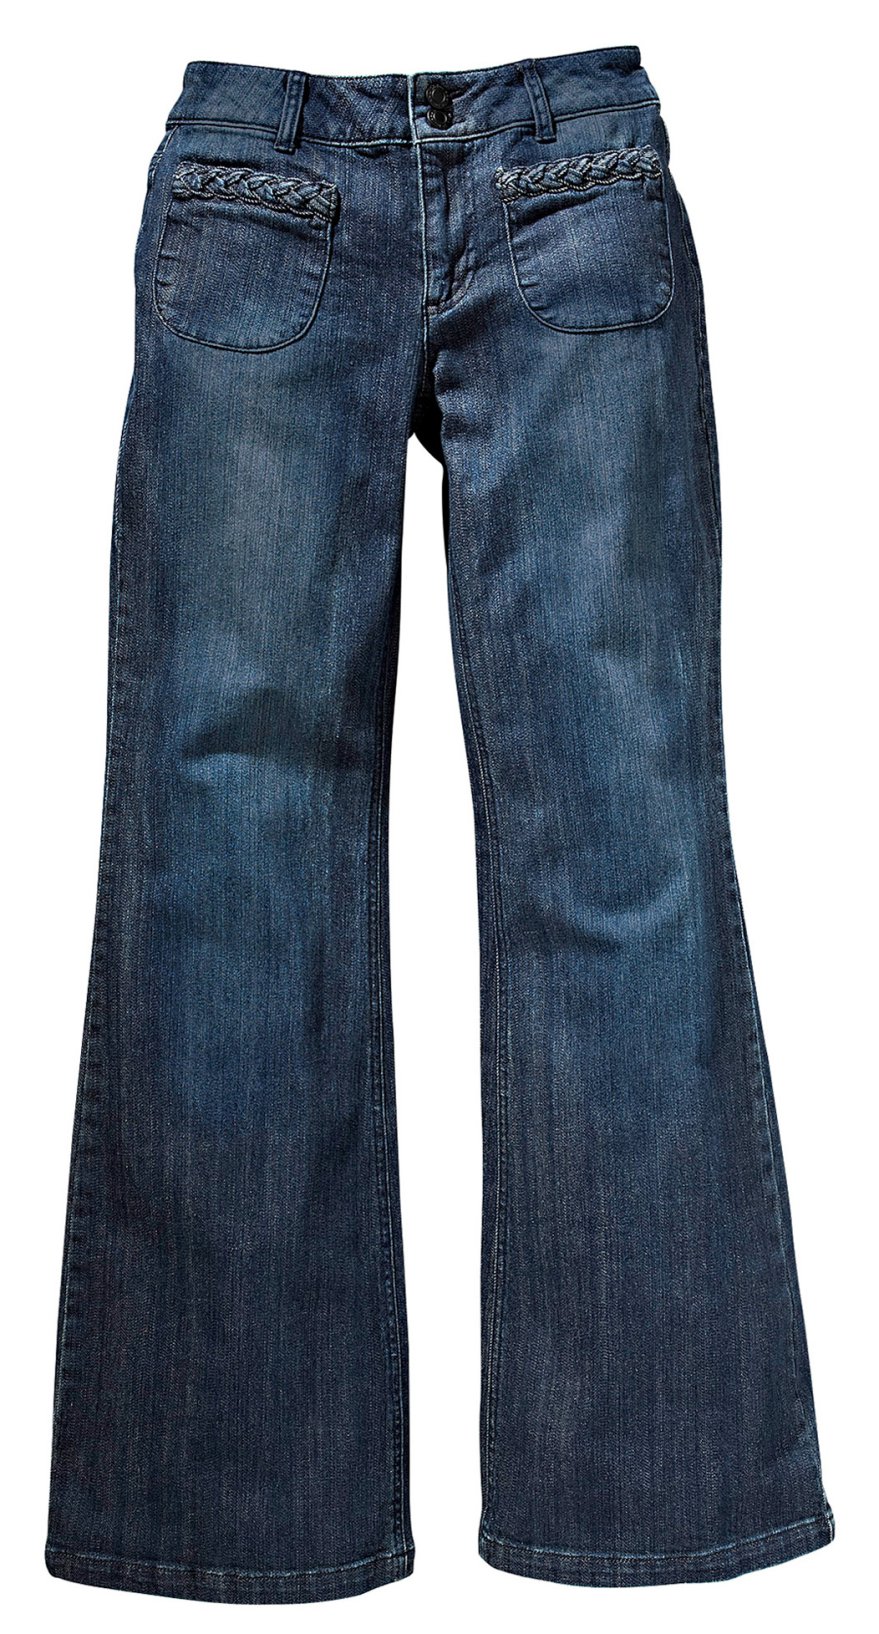 Une silhouette allongée avec un jean sur jean-femme.co